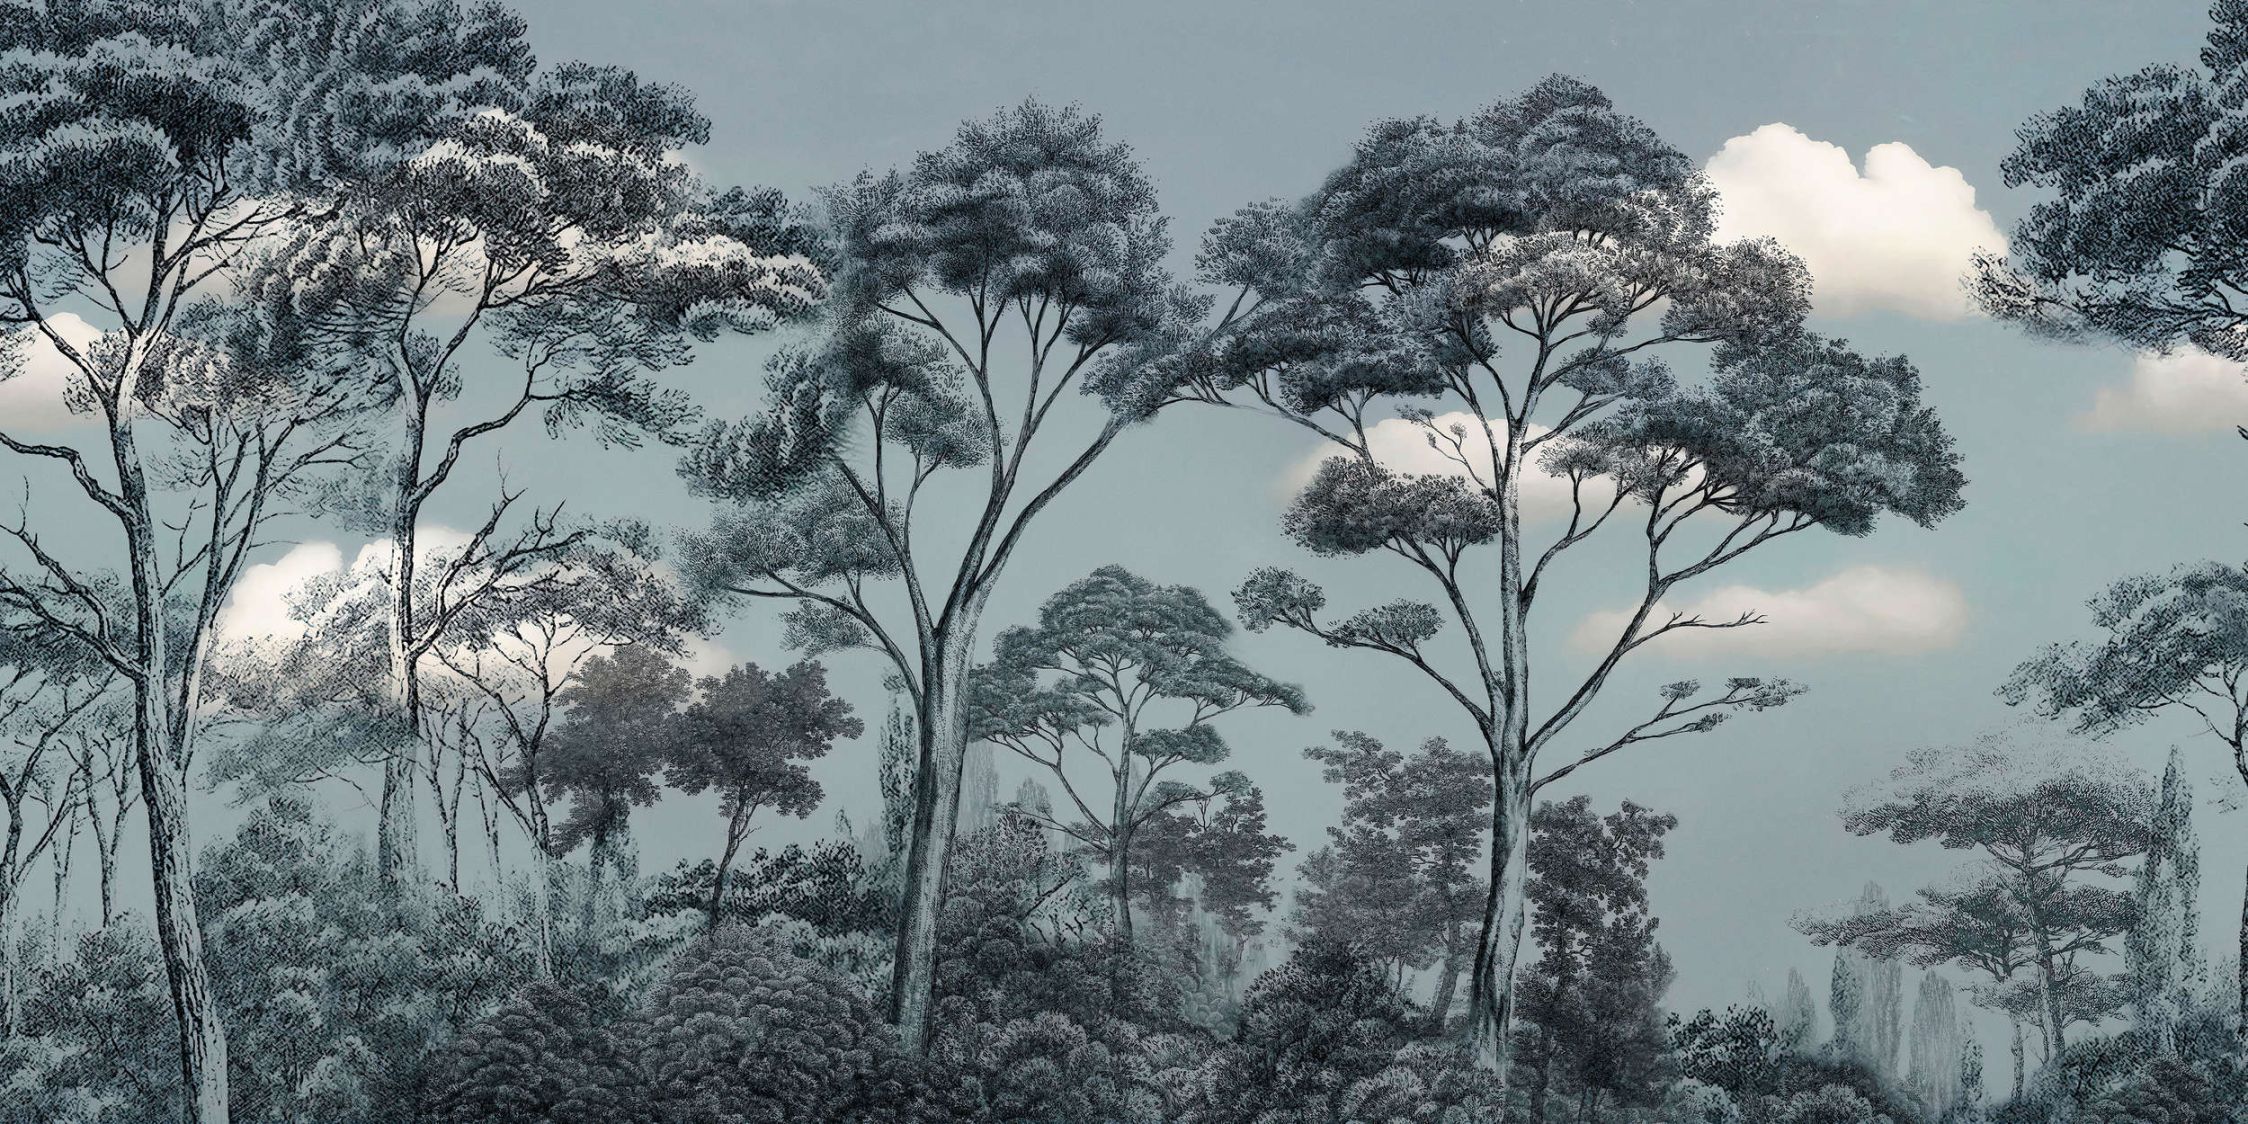             Fototapete »skye 2« - Regenwald vor Wolken – Blau-Grün | Glattes, leicht perlmutt-schimmerndes Vlies
        